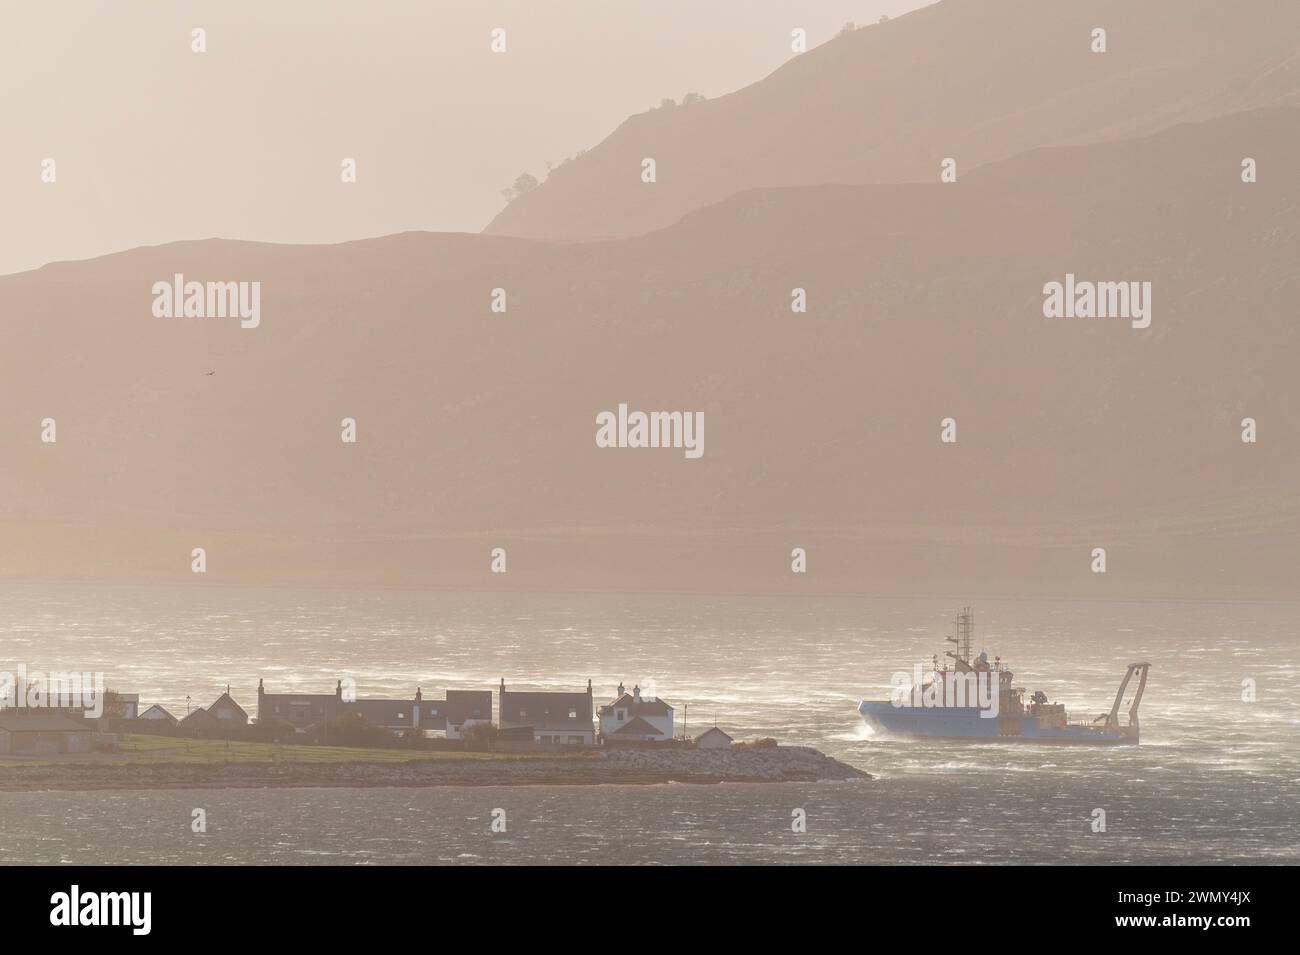 Regno Unito, Scozia, Highlands, North Coast 500 Route, Ullapool, barca di ritorno al porto durante una tempesta Foto Stock